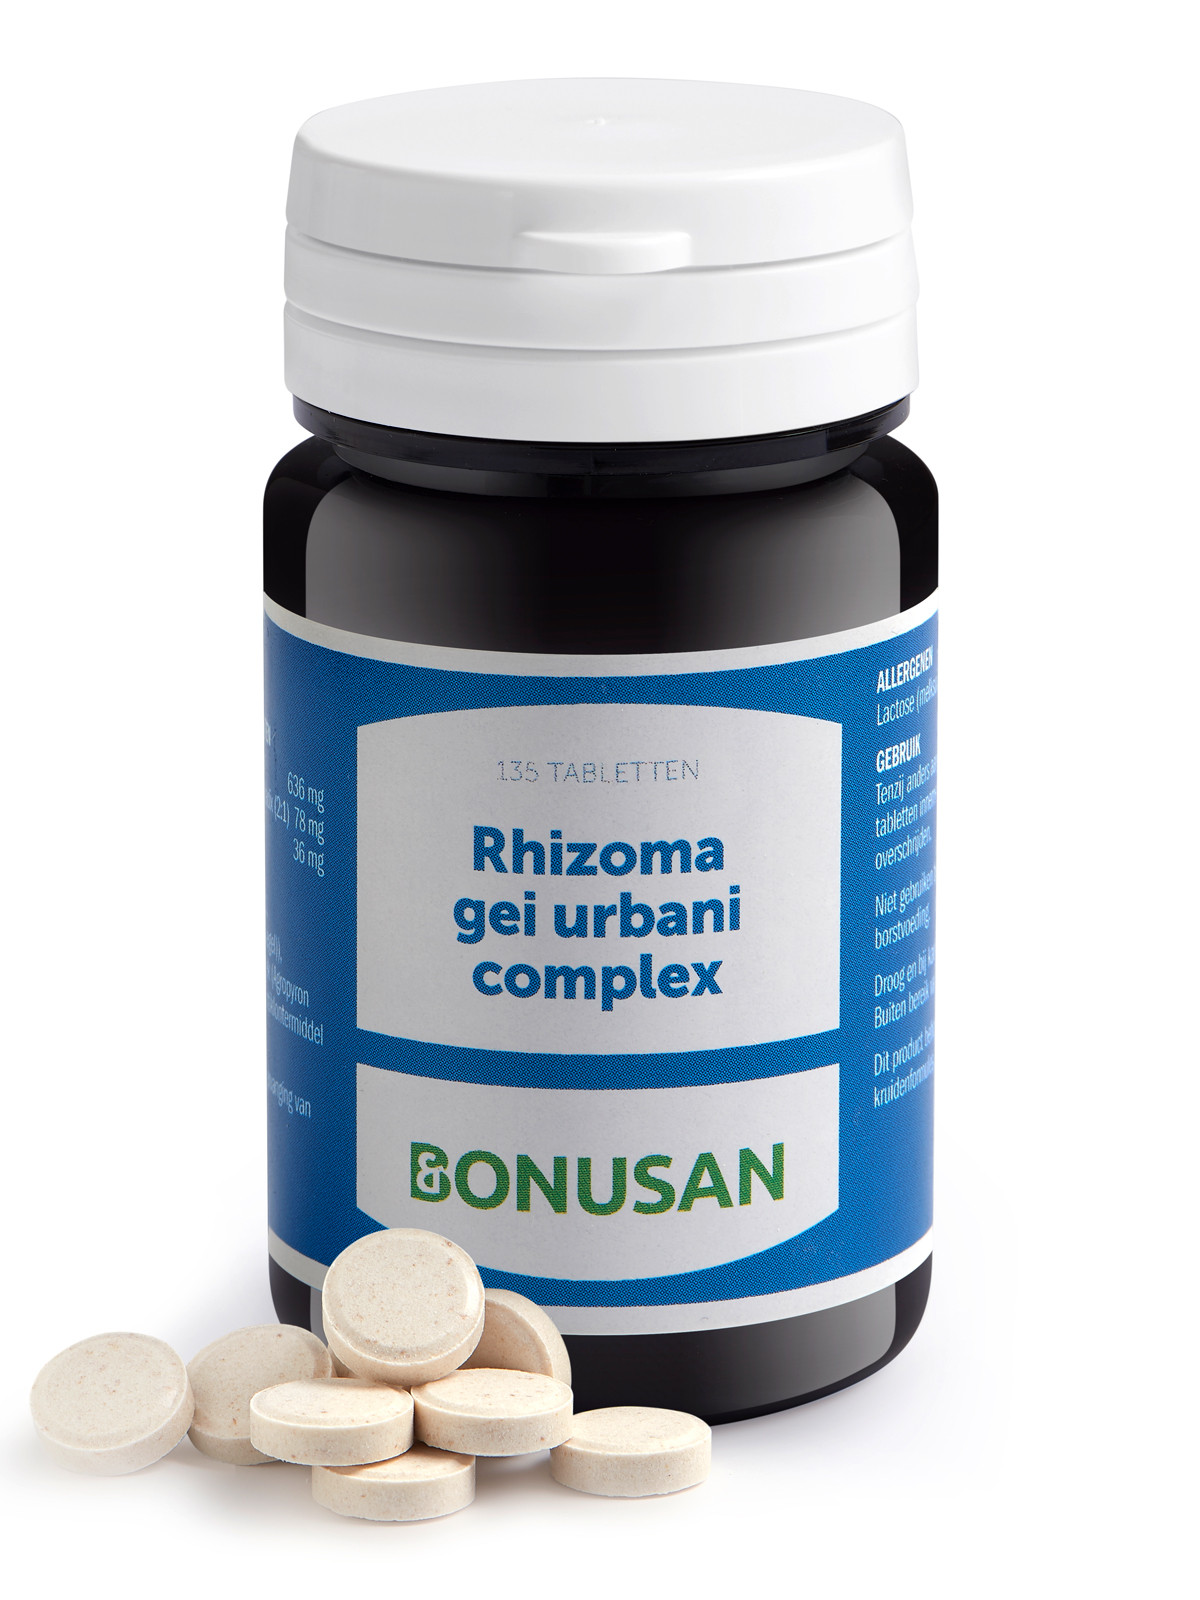 Bonusan - Rhizoma gei urbani complex (binnenkort uit assortiment)